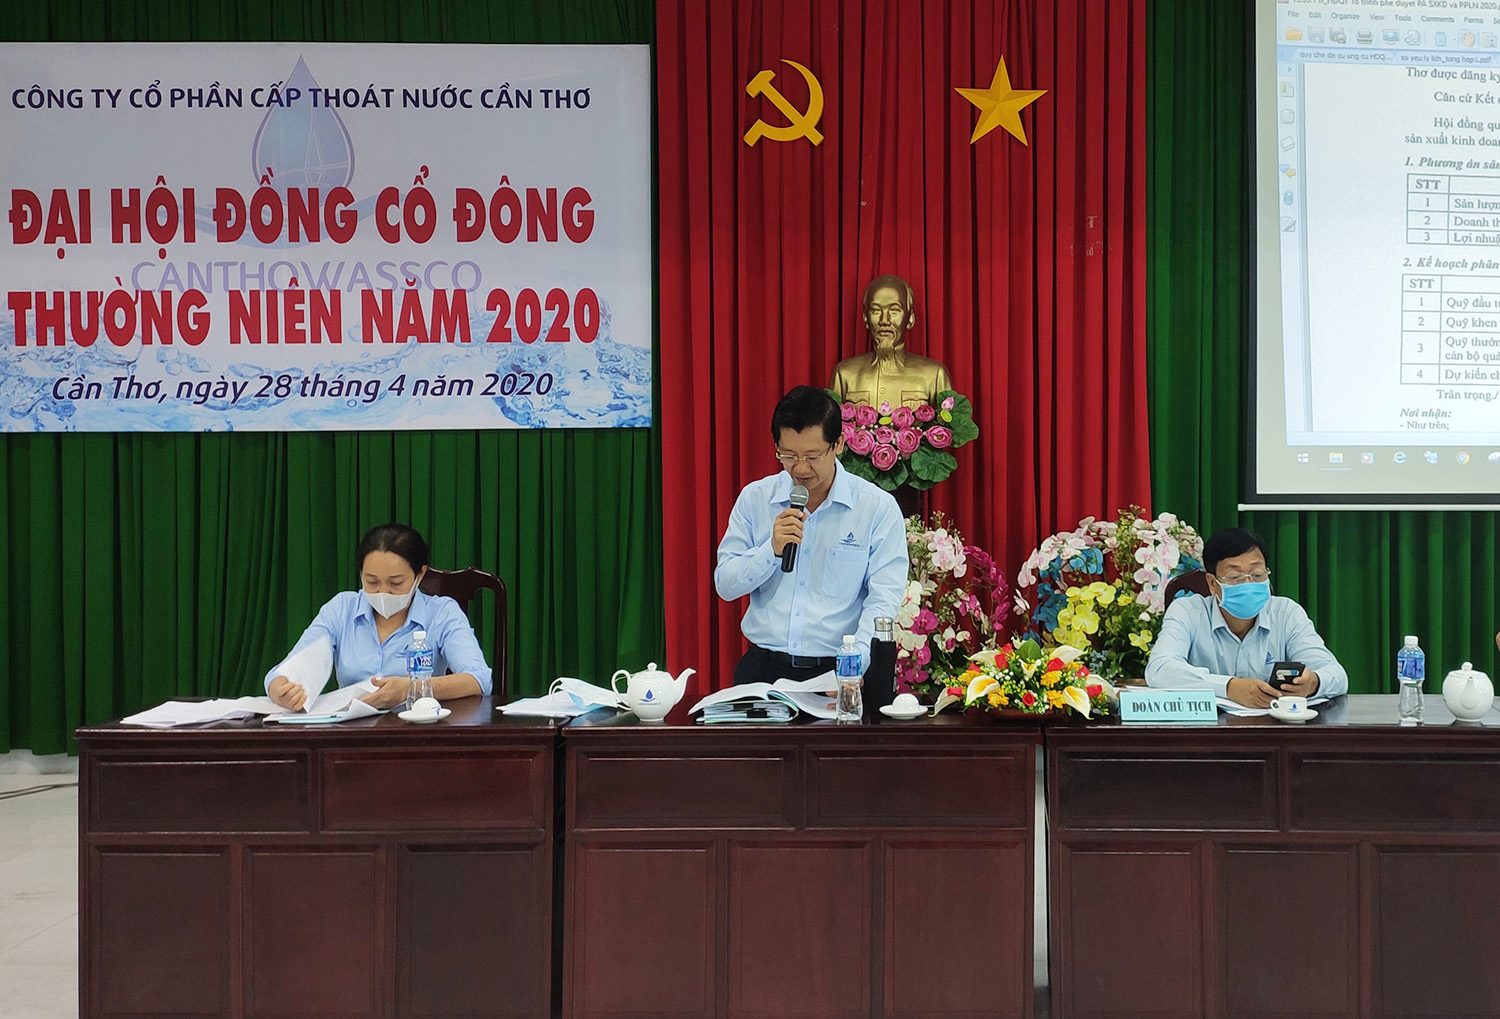 Dai hoi dong Co dong 2020 5